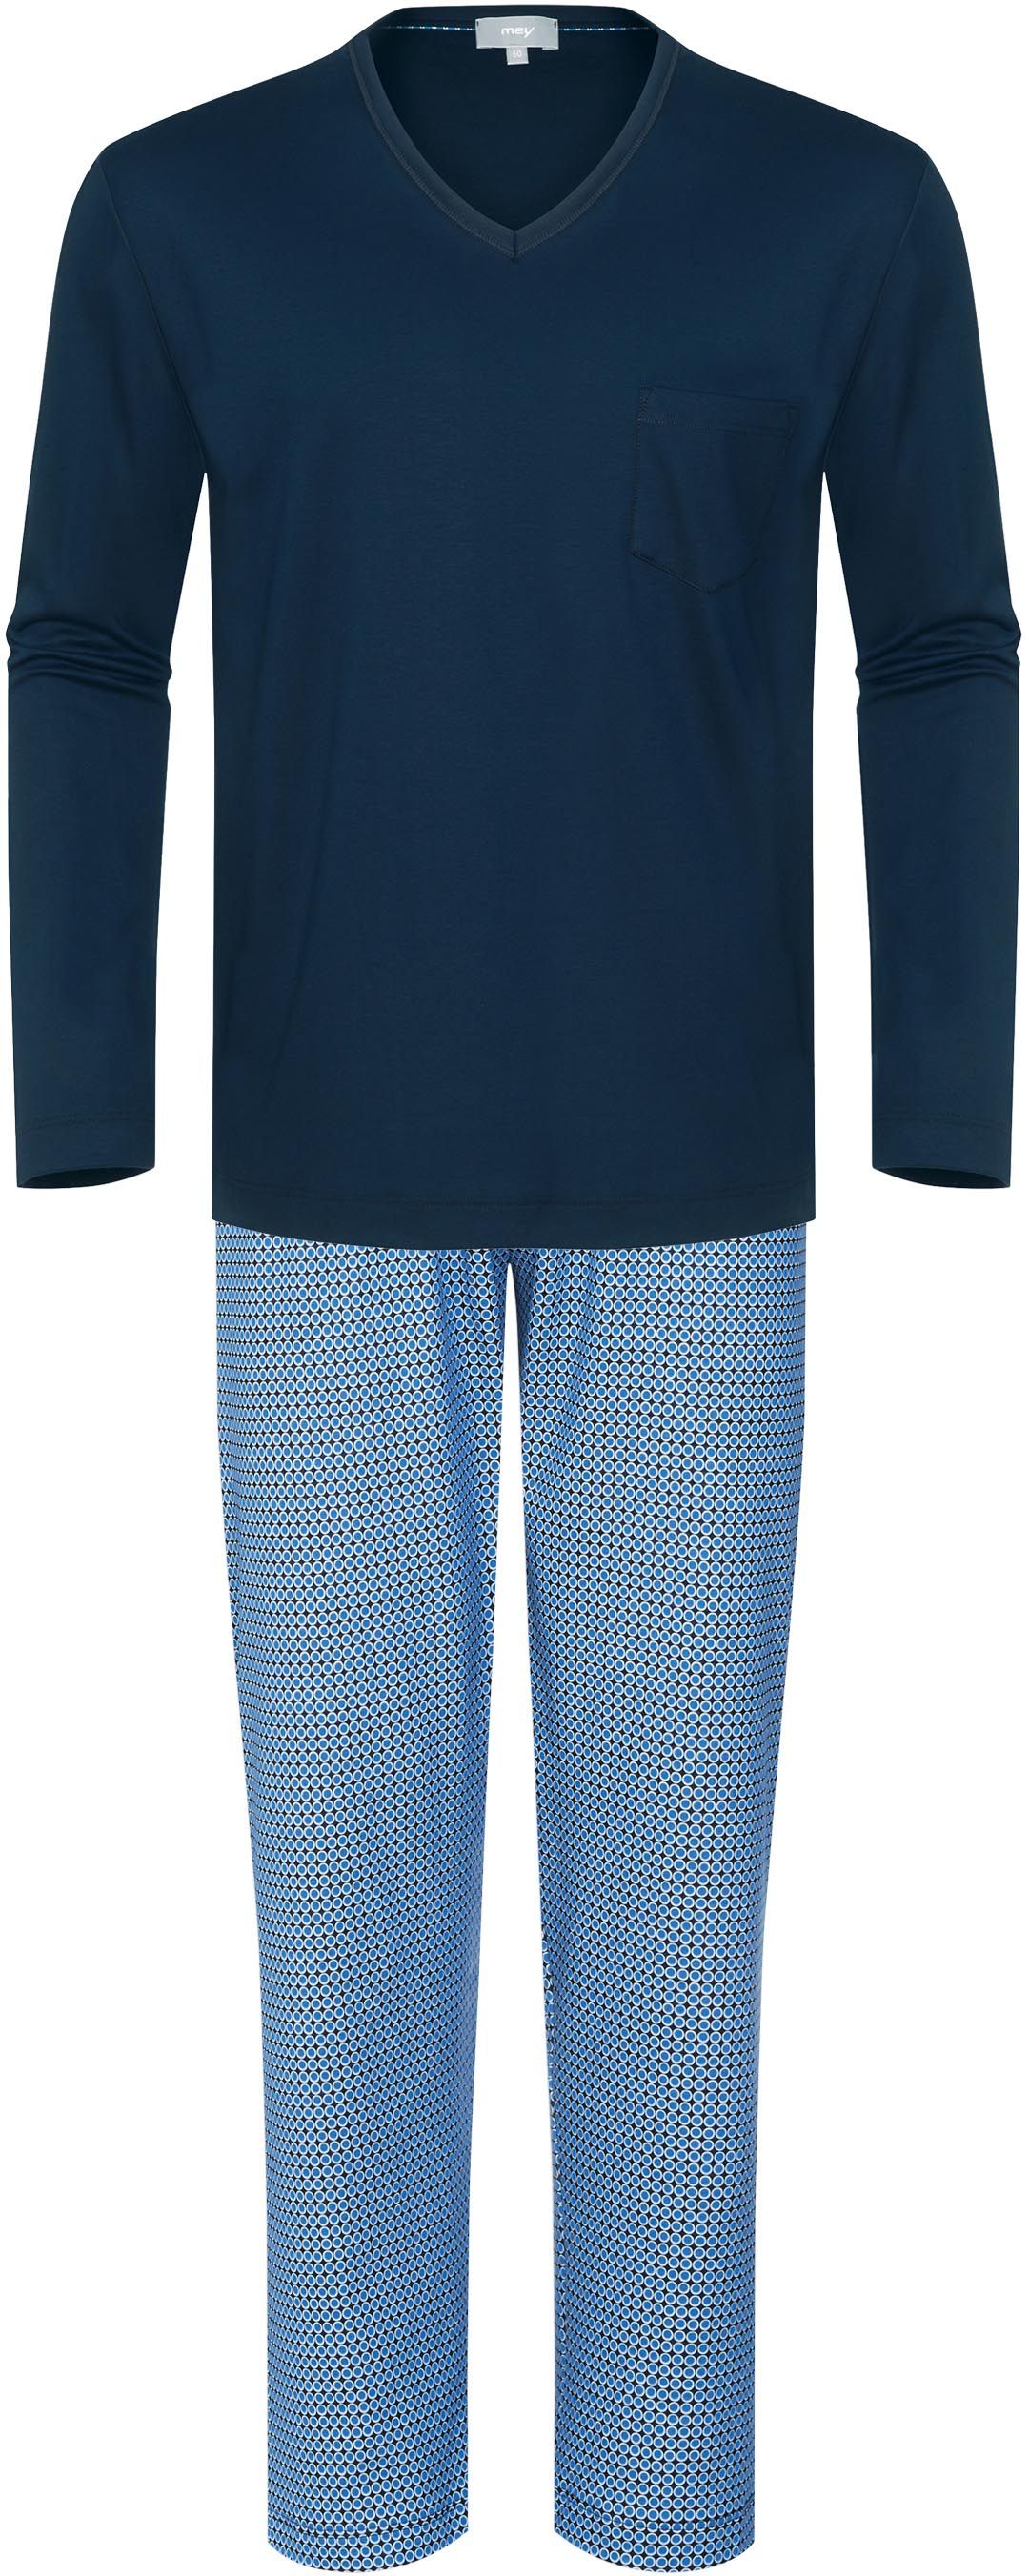 Mey Pyjama Long Bleu foncé Bleu taille 50